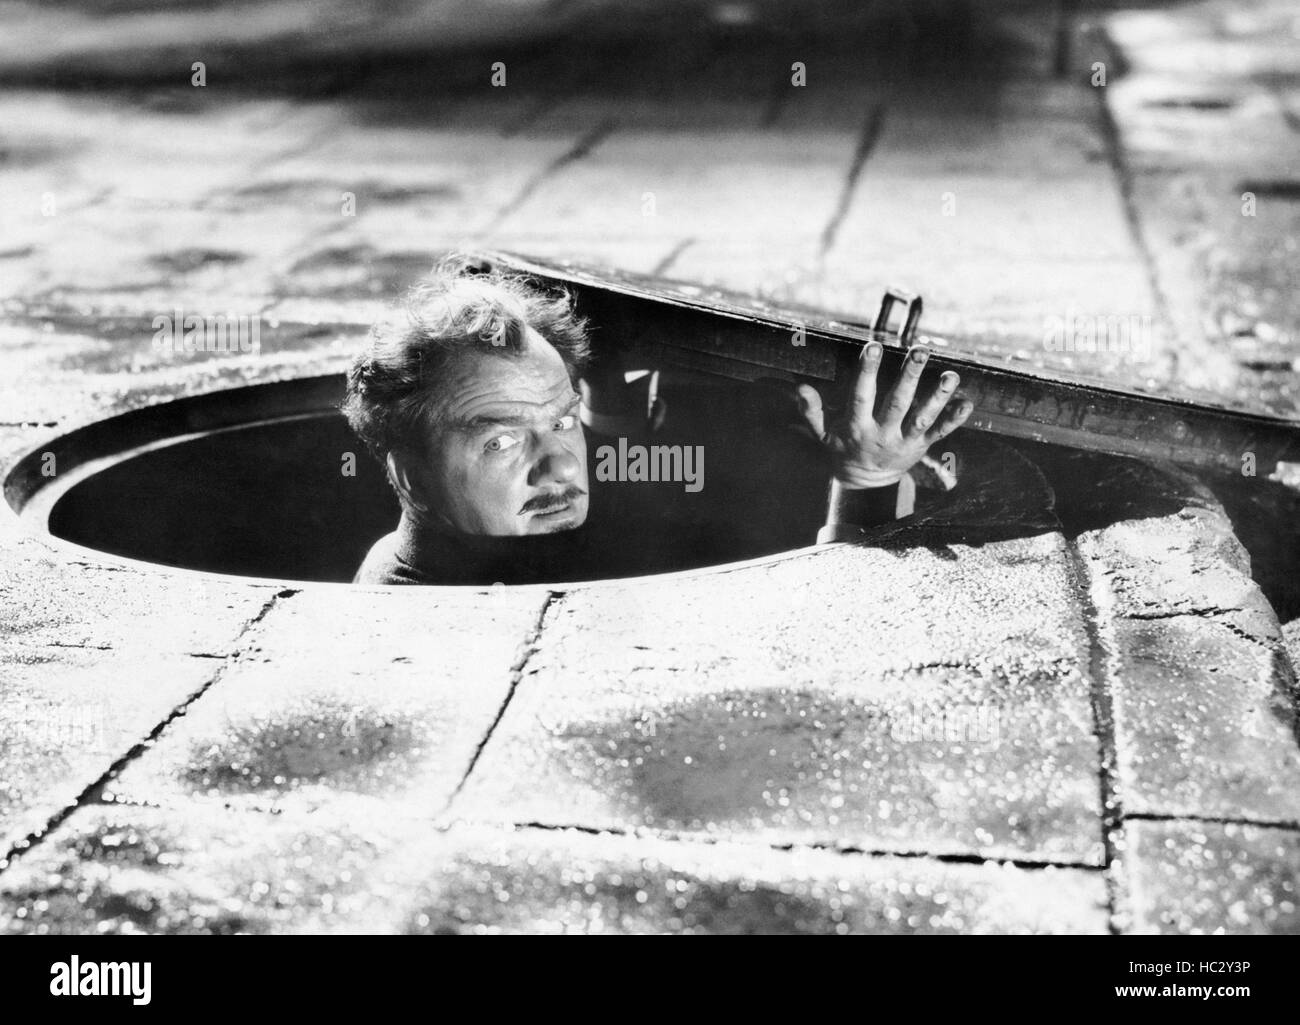 PHANTOM OF THE RUE MORGUE, Karl Malden, 1954 Stock Photo - Alamy